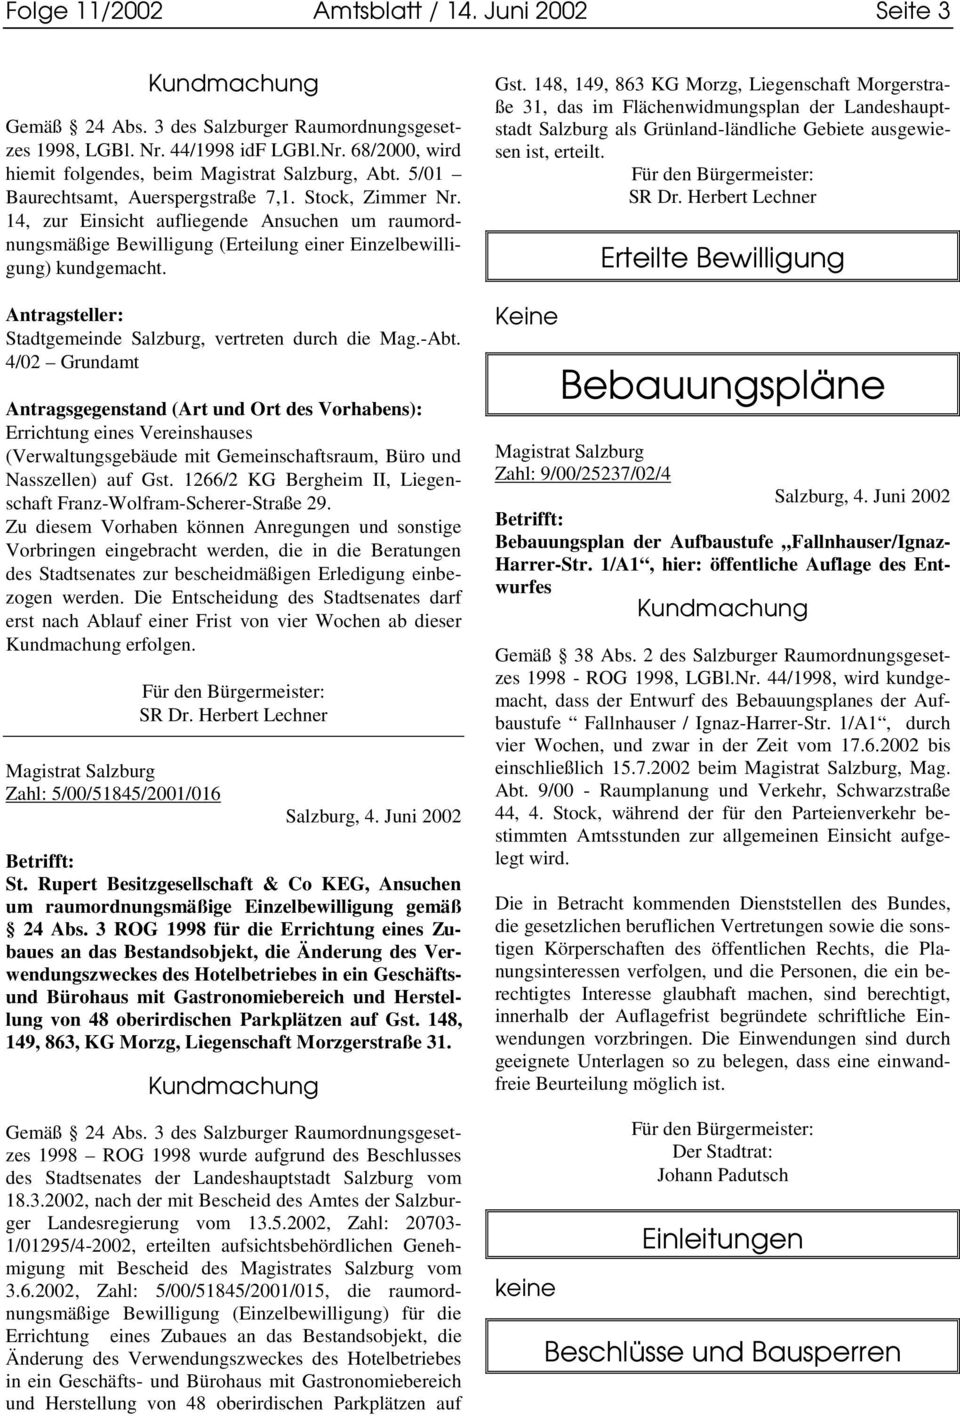 Antragsteller: Stadtgemeinde Salzburg, vertreten durch die Mag.-Abt.